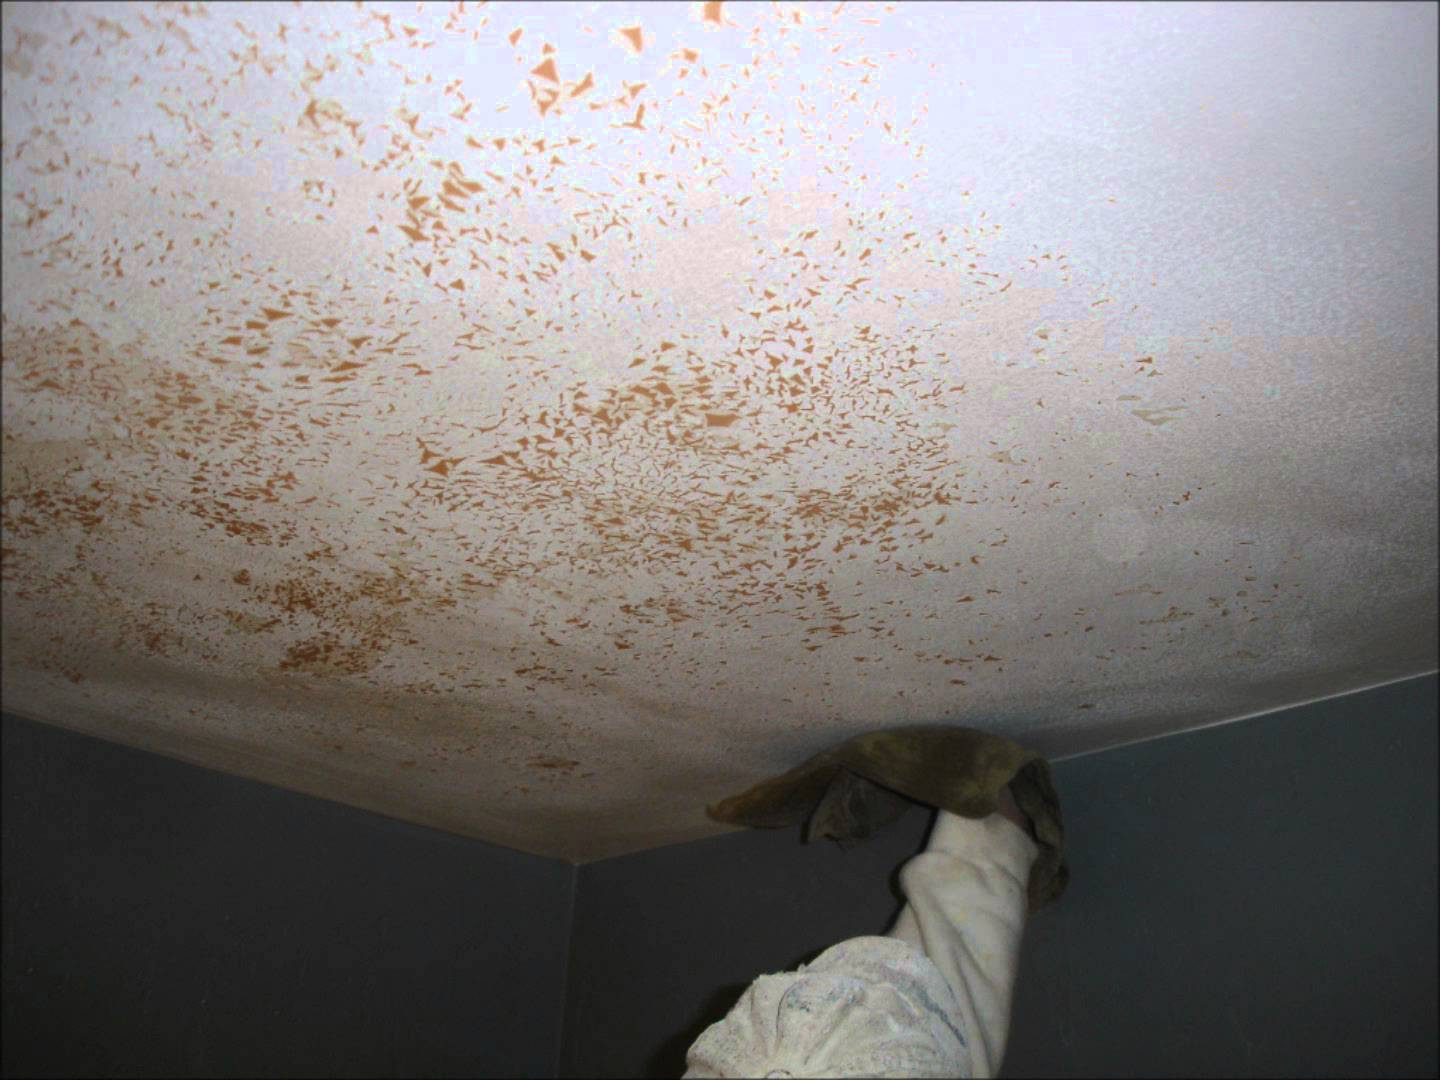 Bathroom Ceiling Paint Peeling
 How to Repair Peeling Paint on Bathroom Walls and Ceiling